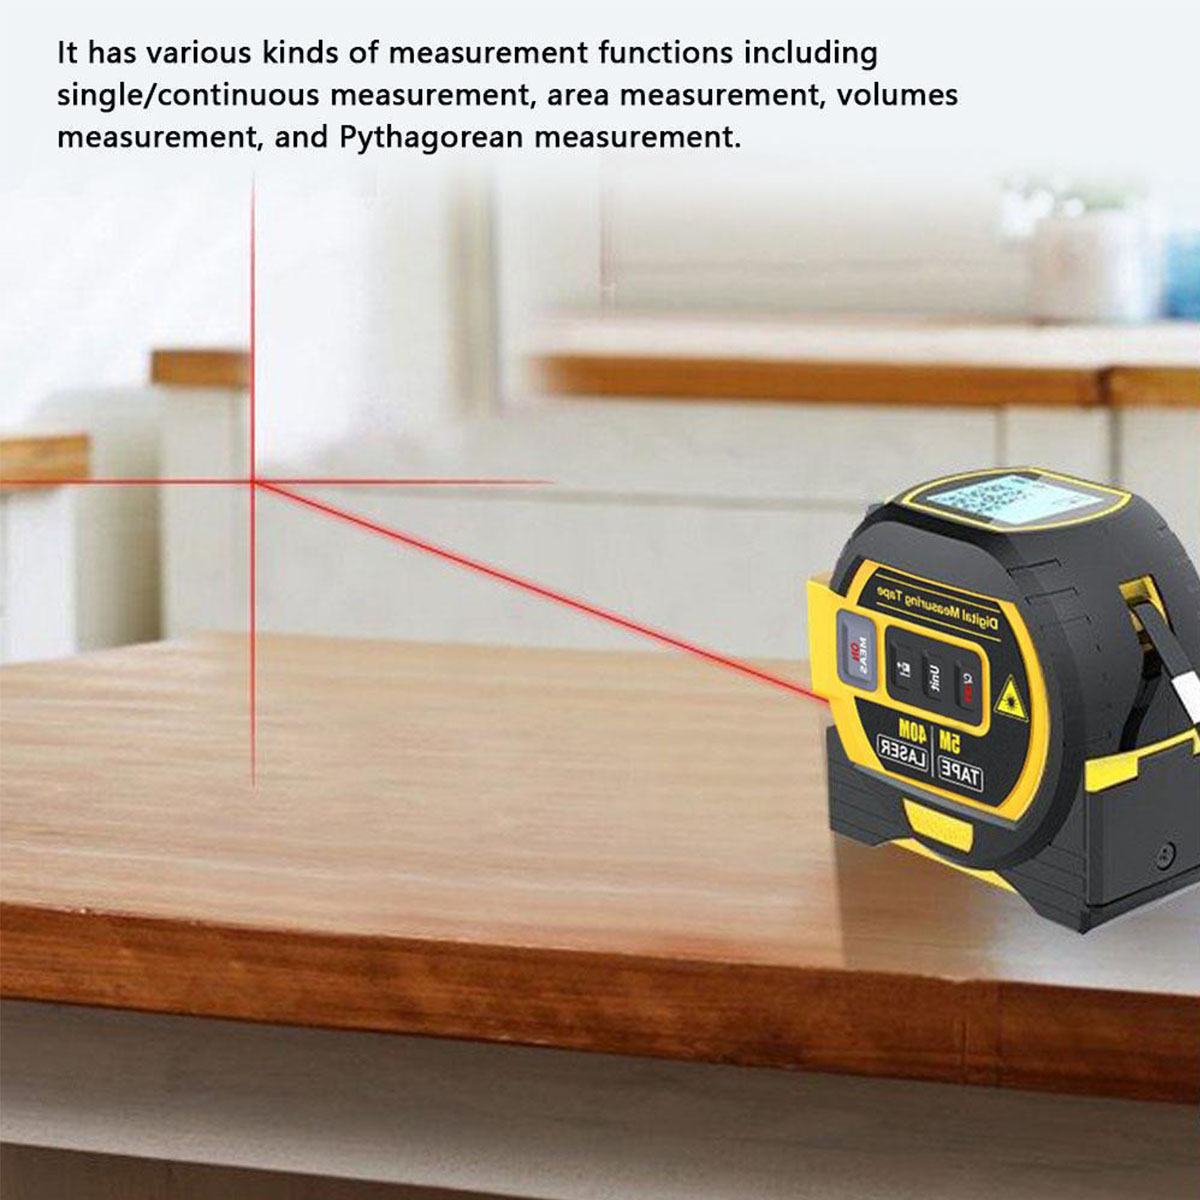 Entfernungsmesser tachymeter 3-in-1 Laser BRIGHTAKE und Gerät in Vielseitigkeit einem – Präzision